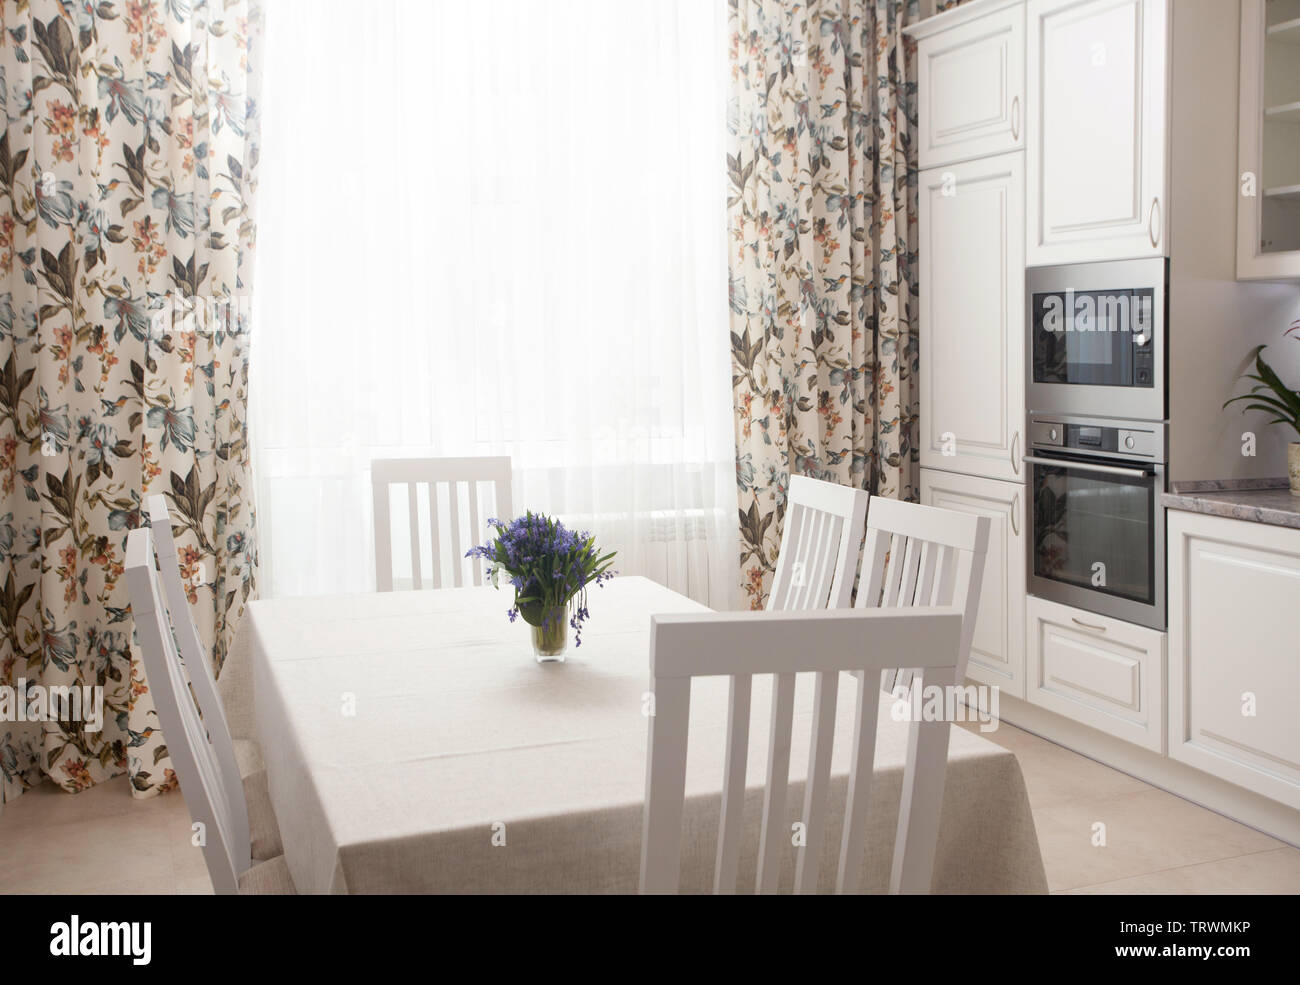 Foto von epmty minimalistischen Interieur Hintergrund, Küche in einem modernen Apartment mit großen Fenstern, Tageslicht, Vorhang, Stühle, Möbel, Geräte und Flo Stockfoto